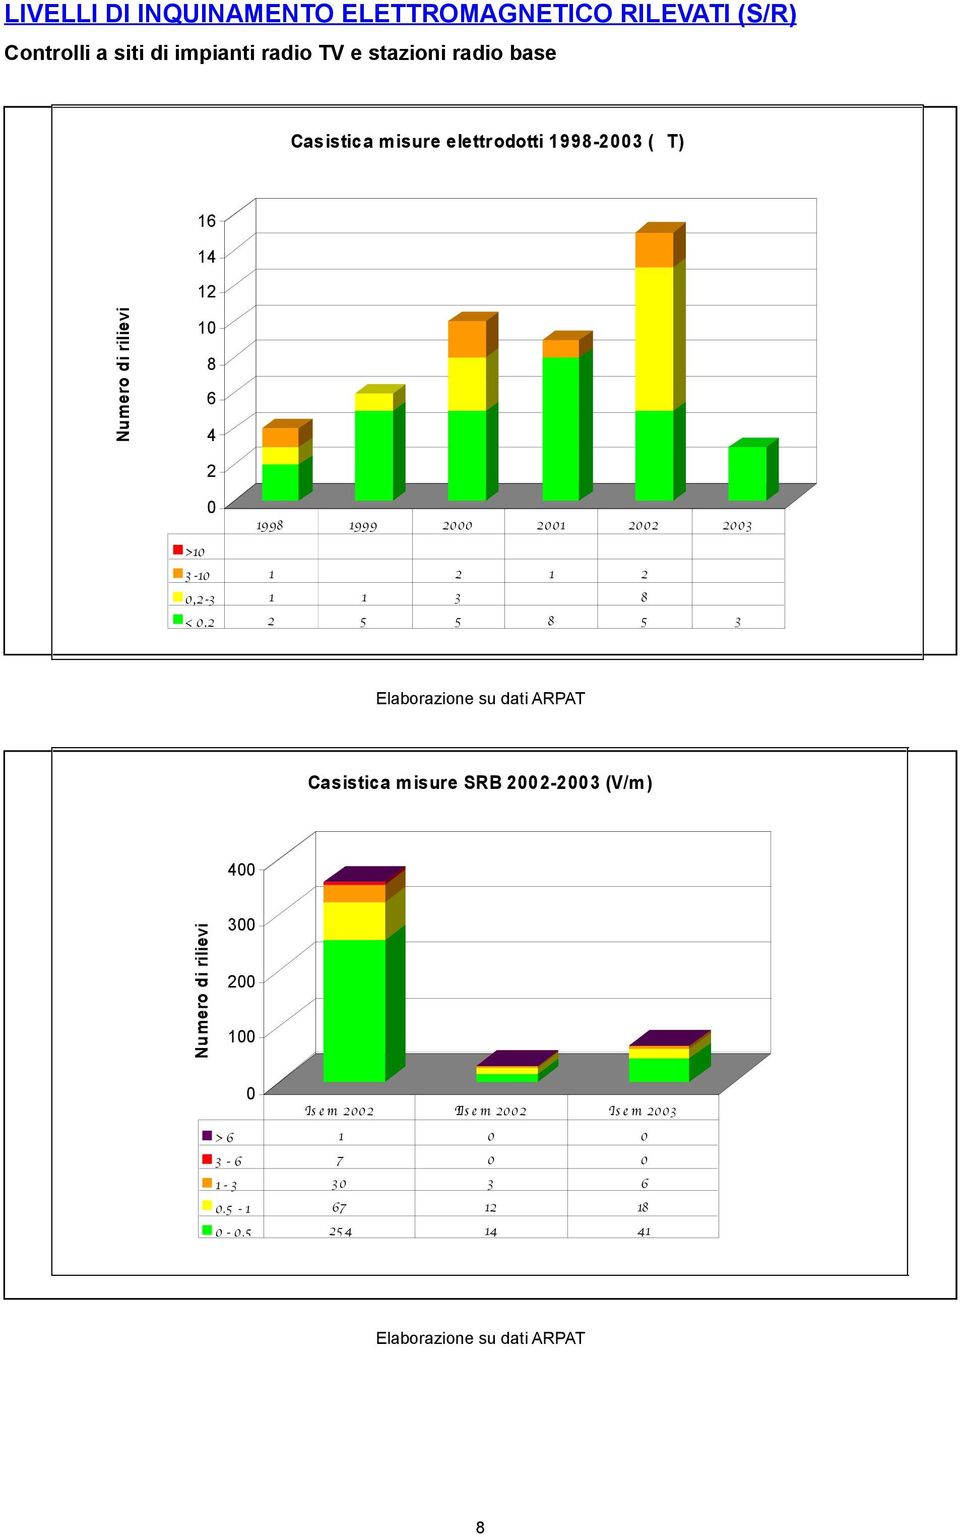 1 1 3 8 < 0,2 2 5 5 8 5 3 Elaborazione su dati ARPAT Casistica misure SRB 2002-2003 (V/m) 400 Numero di rilievi 300 200 100 0 I